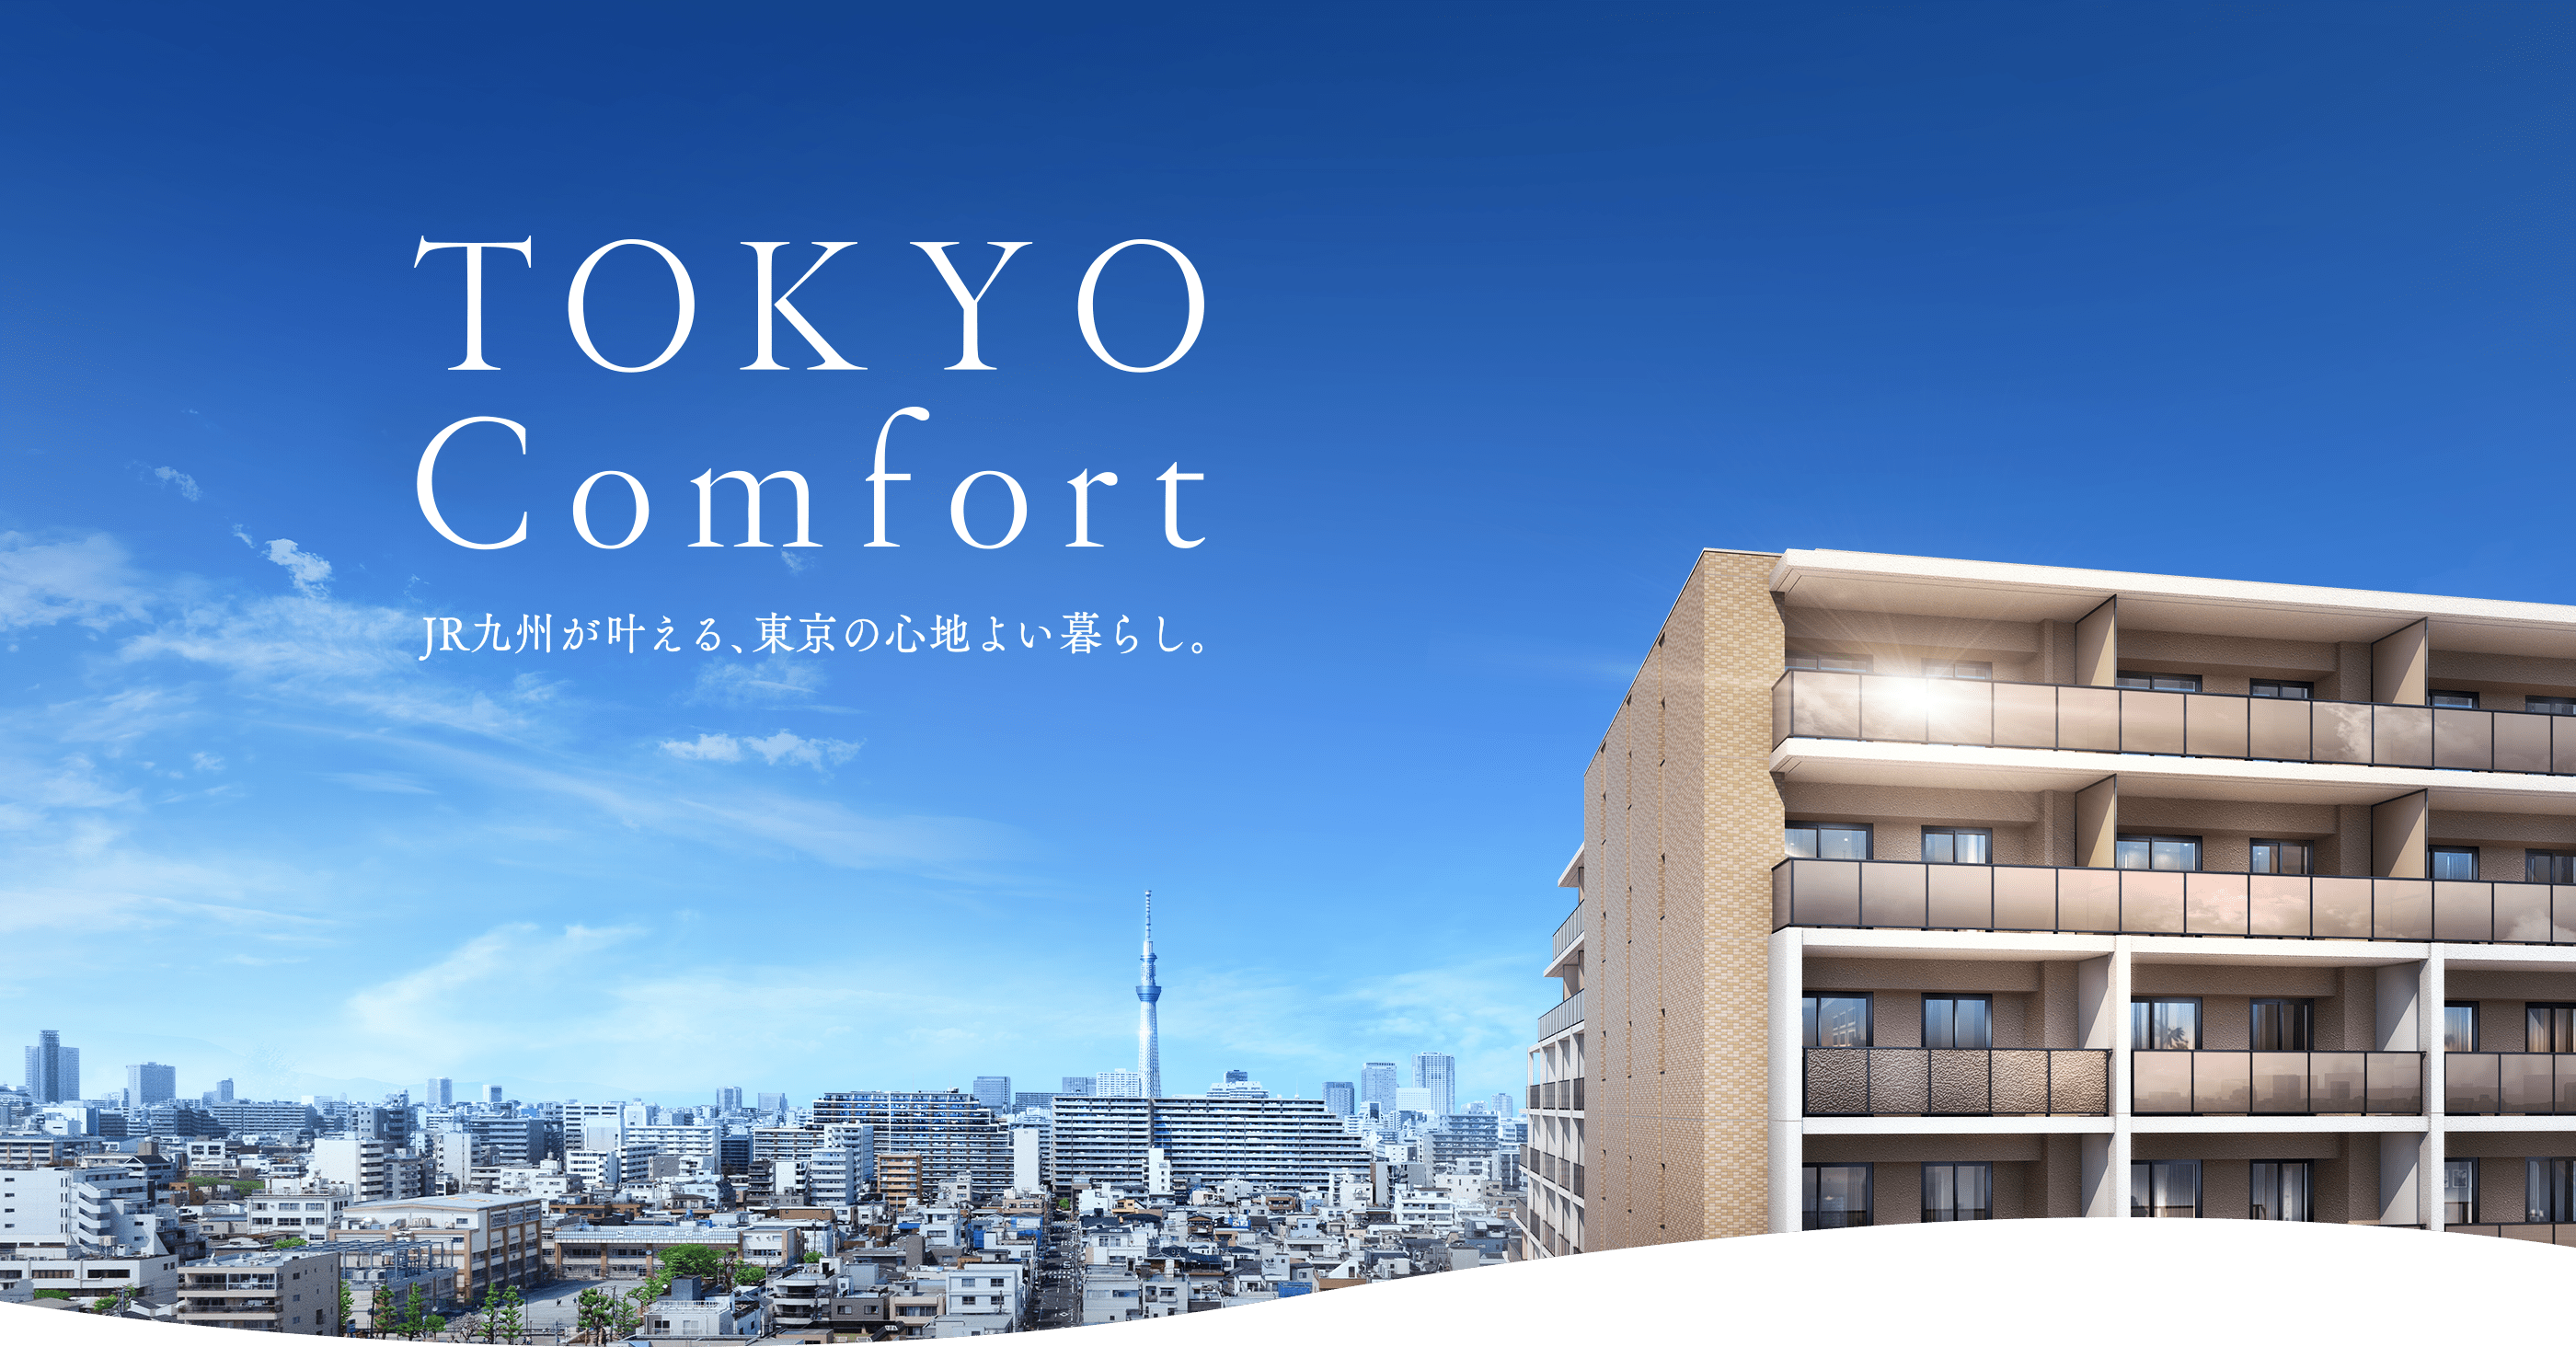 TOKYO Comfort